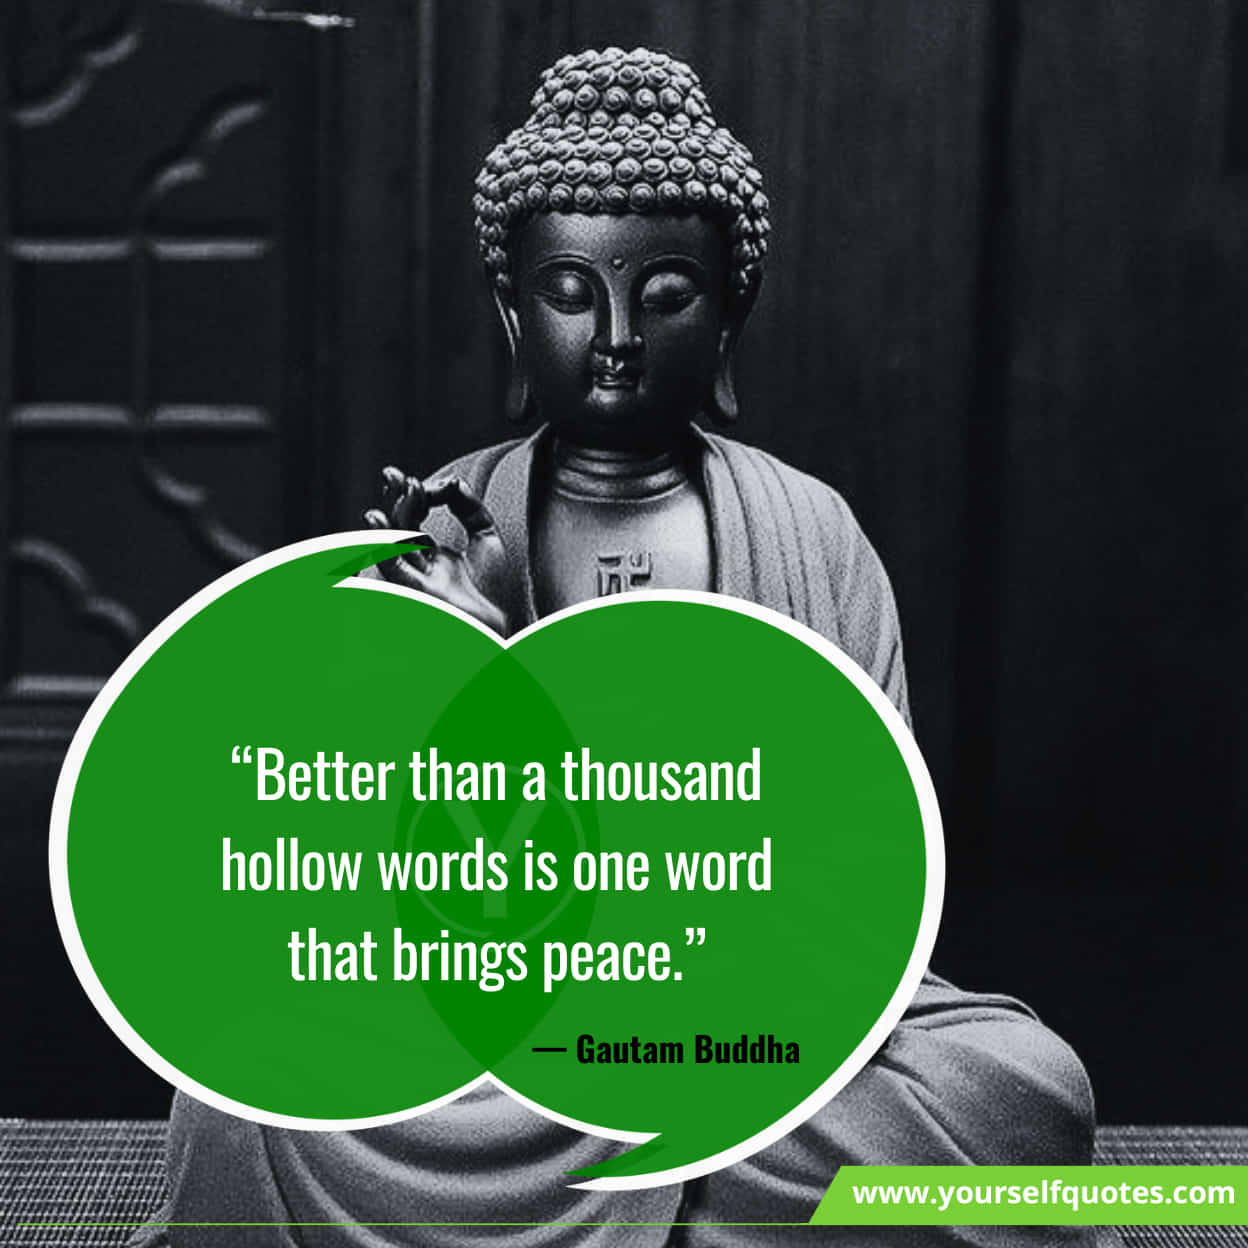 Best Gautam Buddha Quotes